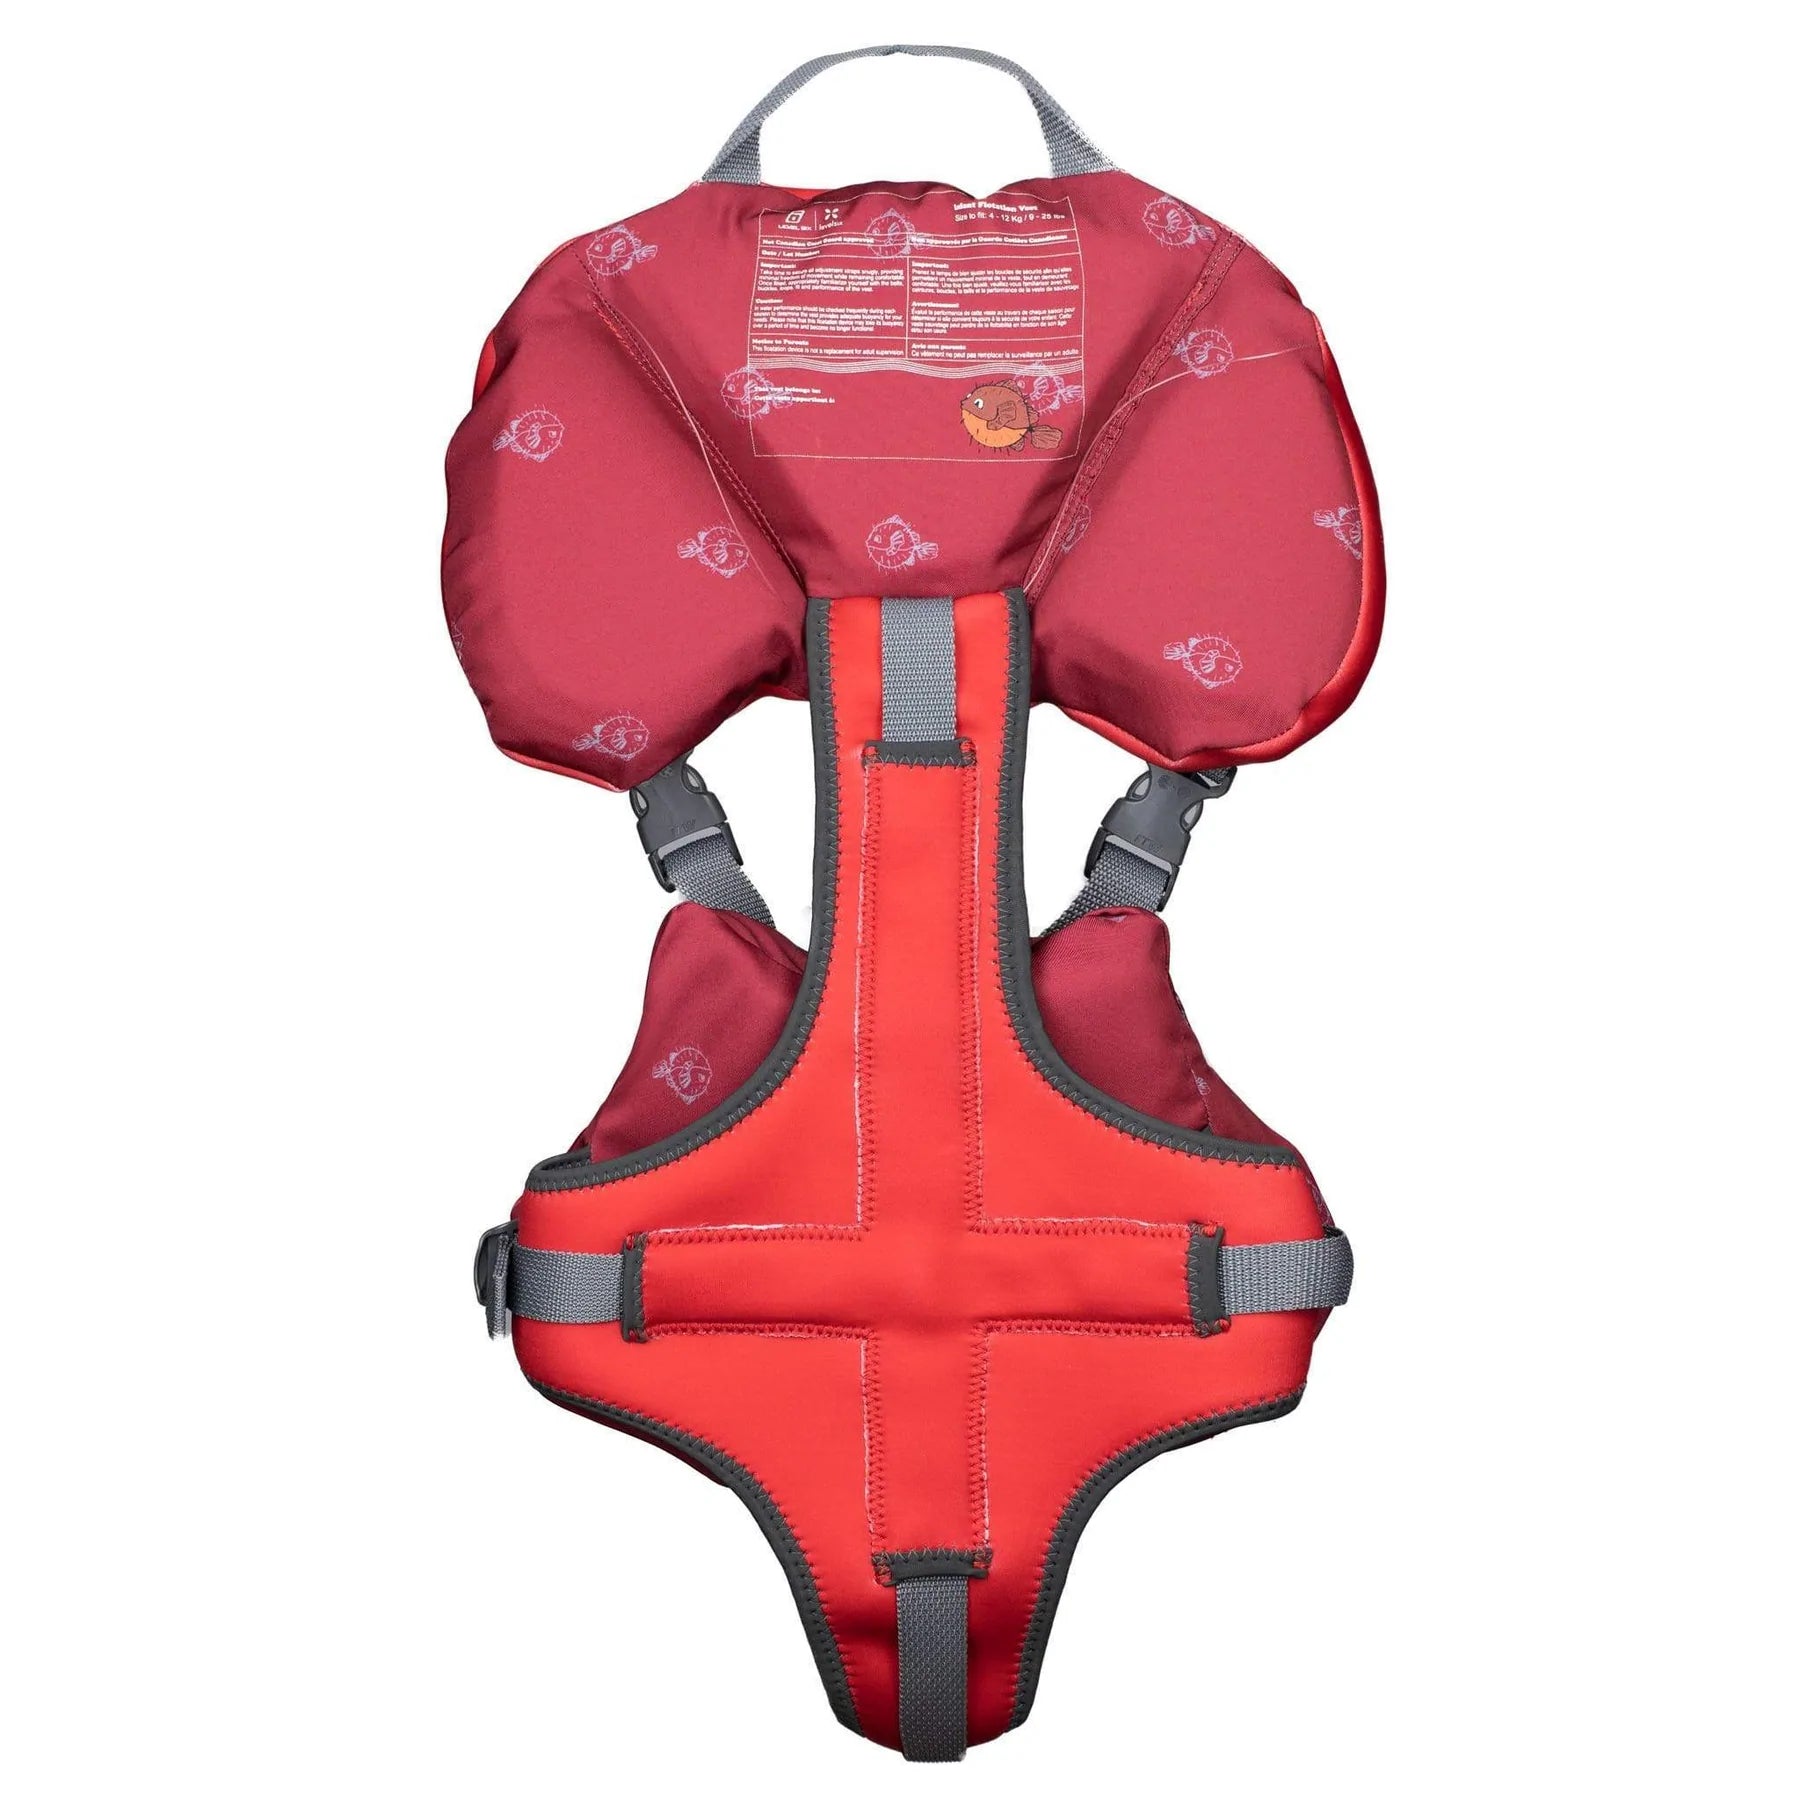 Level Six - Puffer veste de flottaison pour bébé - {{ SUP Montreal }}